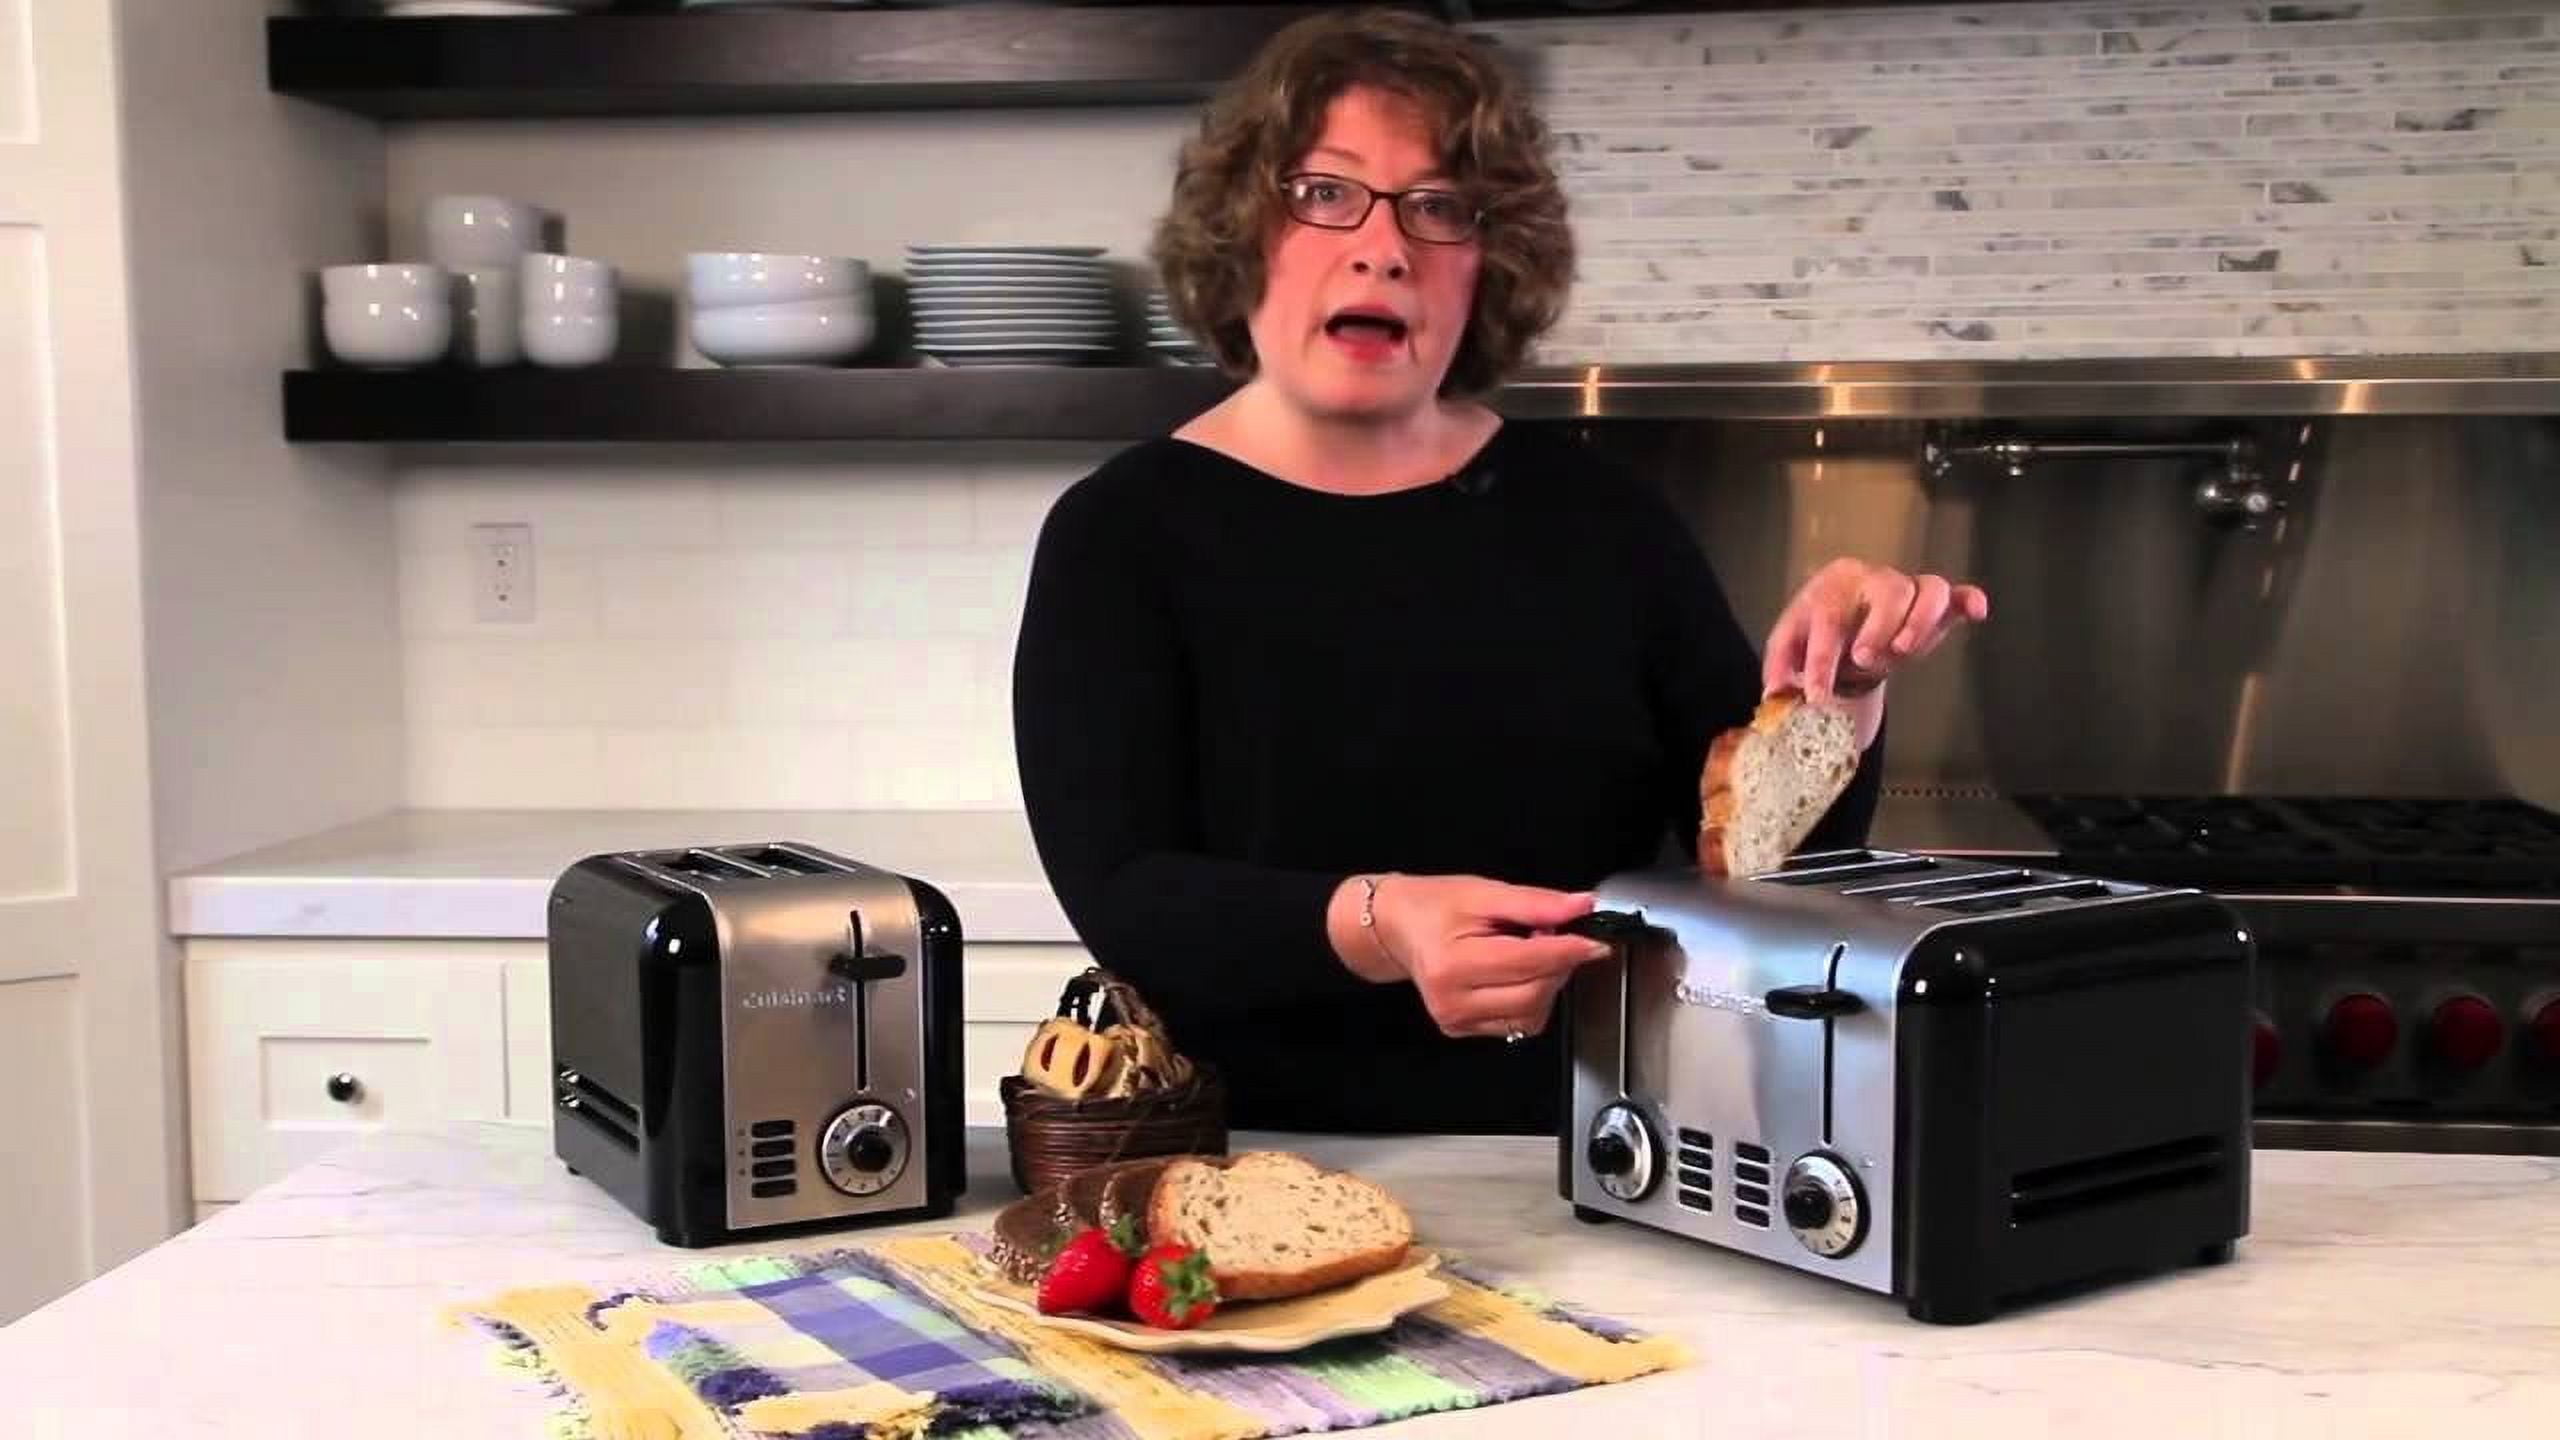 Cuisinart 4 Slice Toaster — Las Cosas Kitchen Shoppe